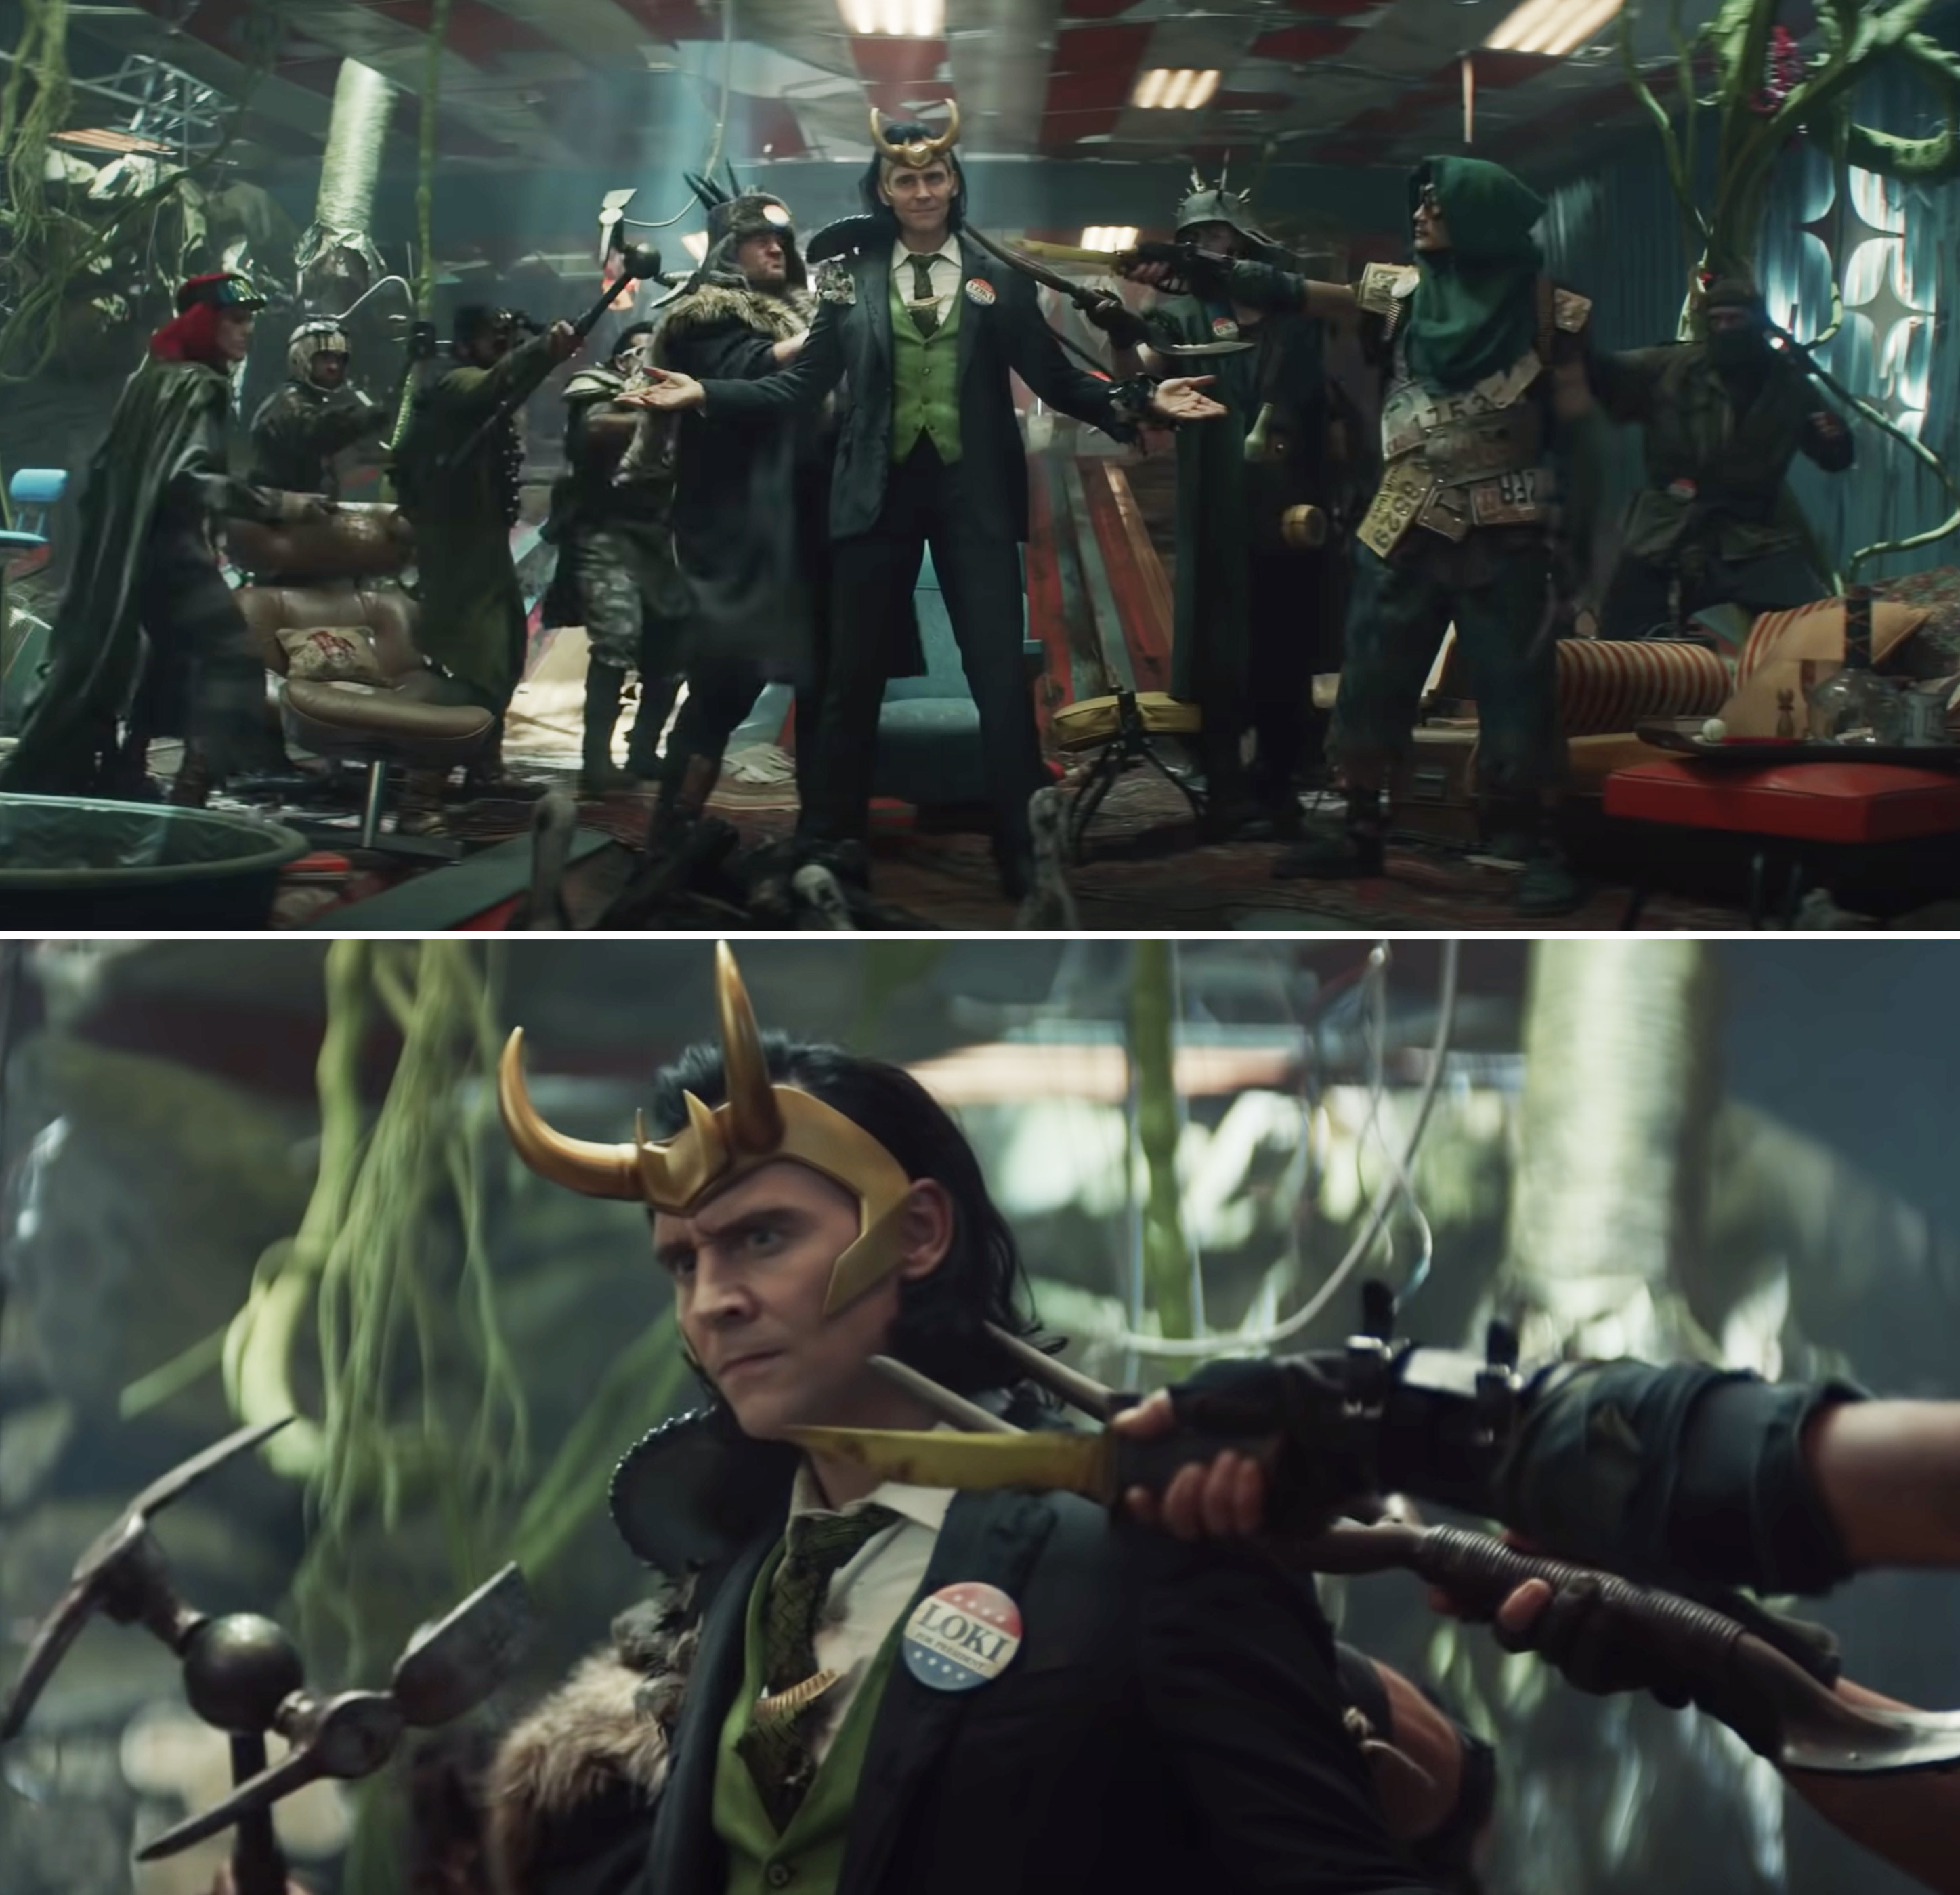 Loki in a standoff